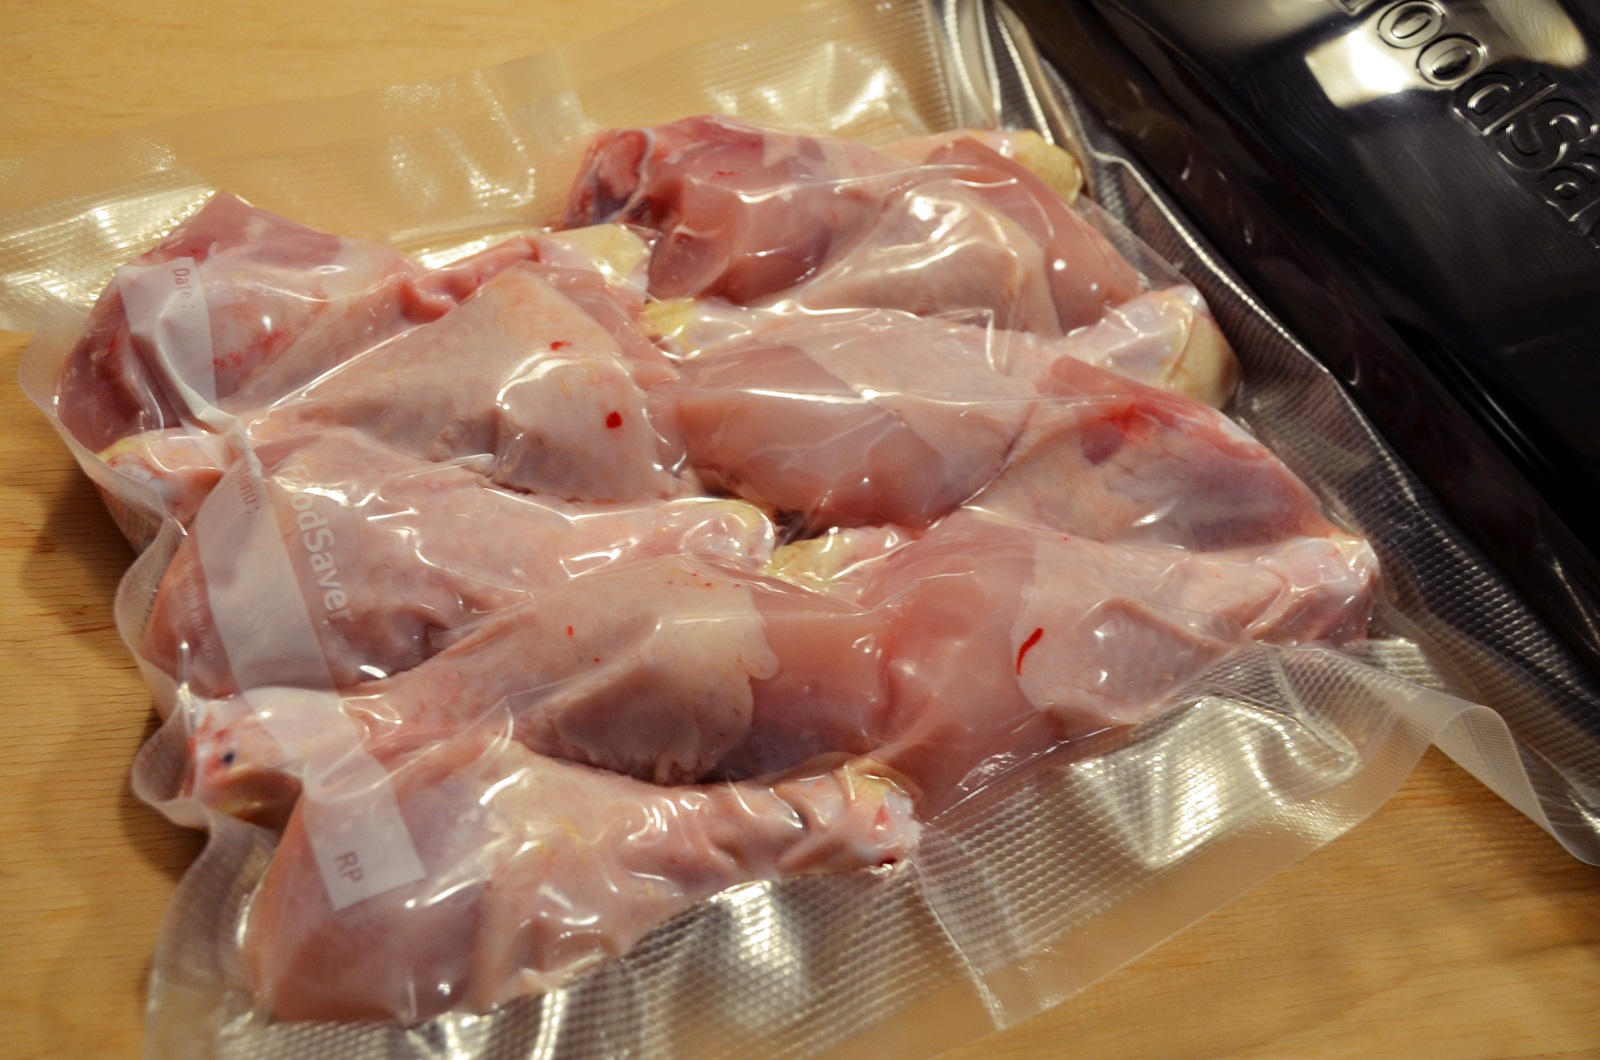 Pastrarea carnii de pui la congelator sau frigider cu ajutorul aparatului de vidat FoodSaver